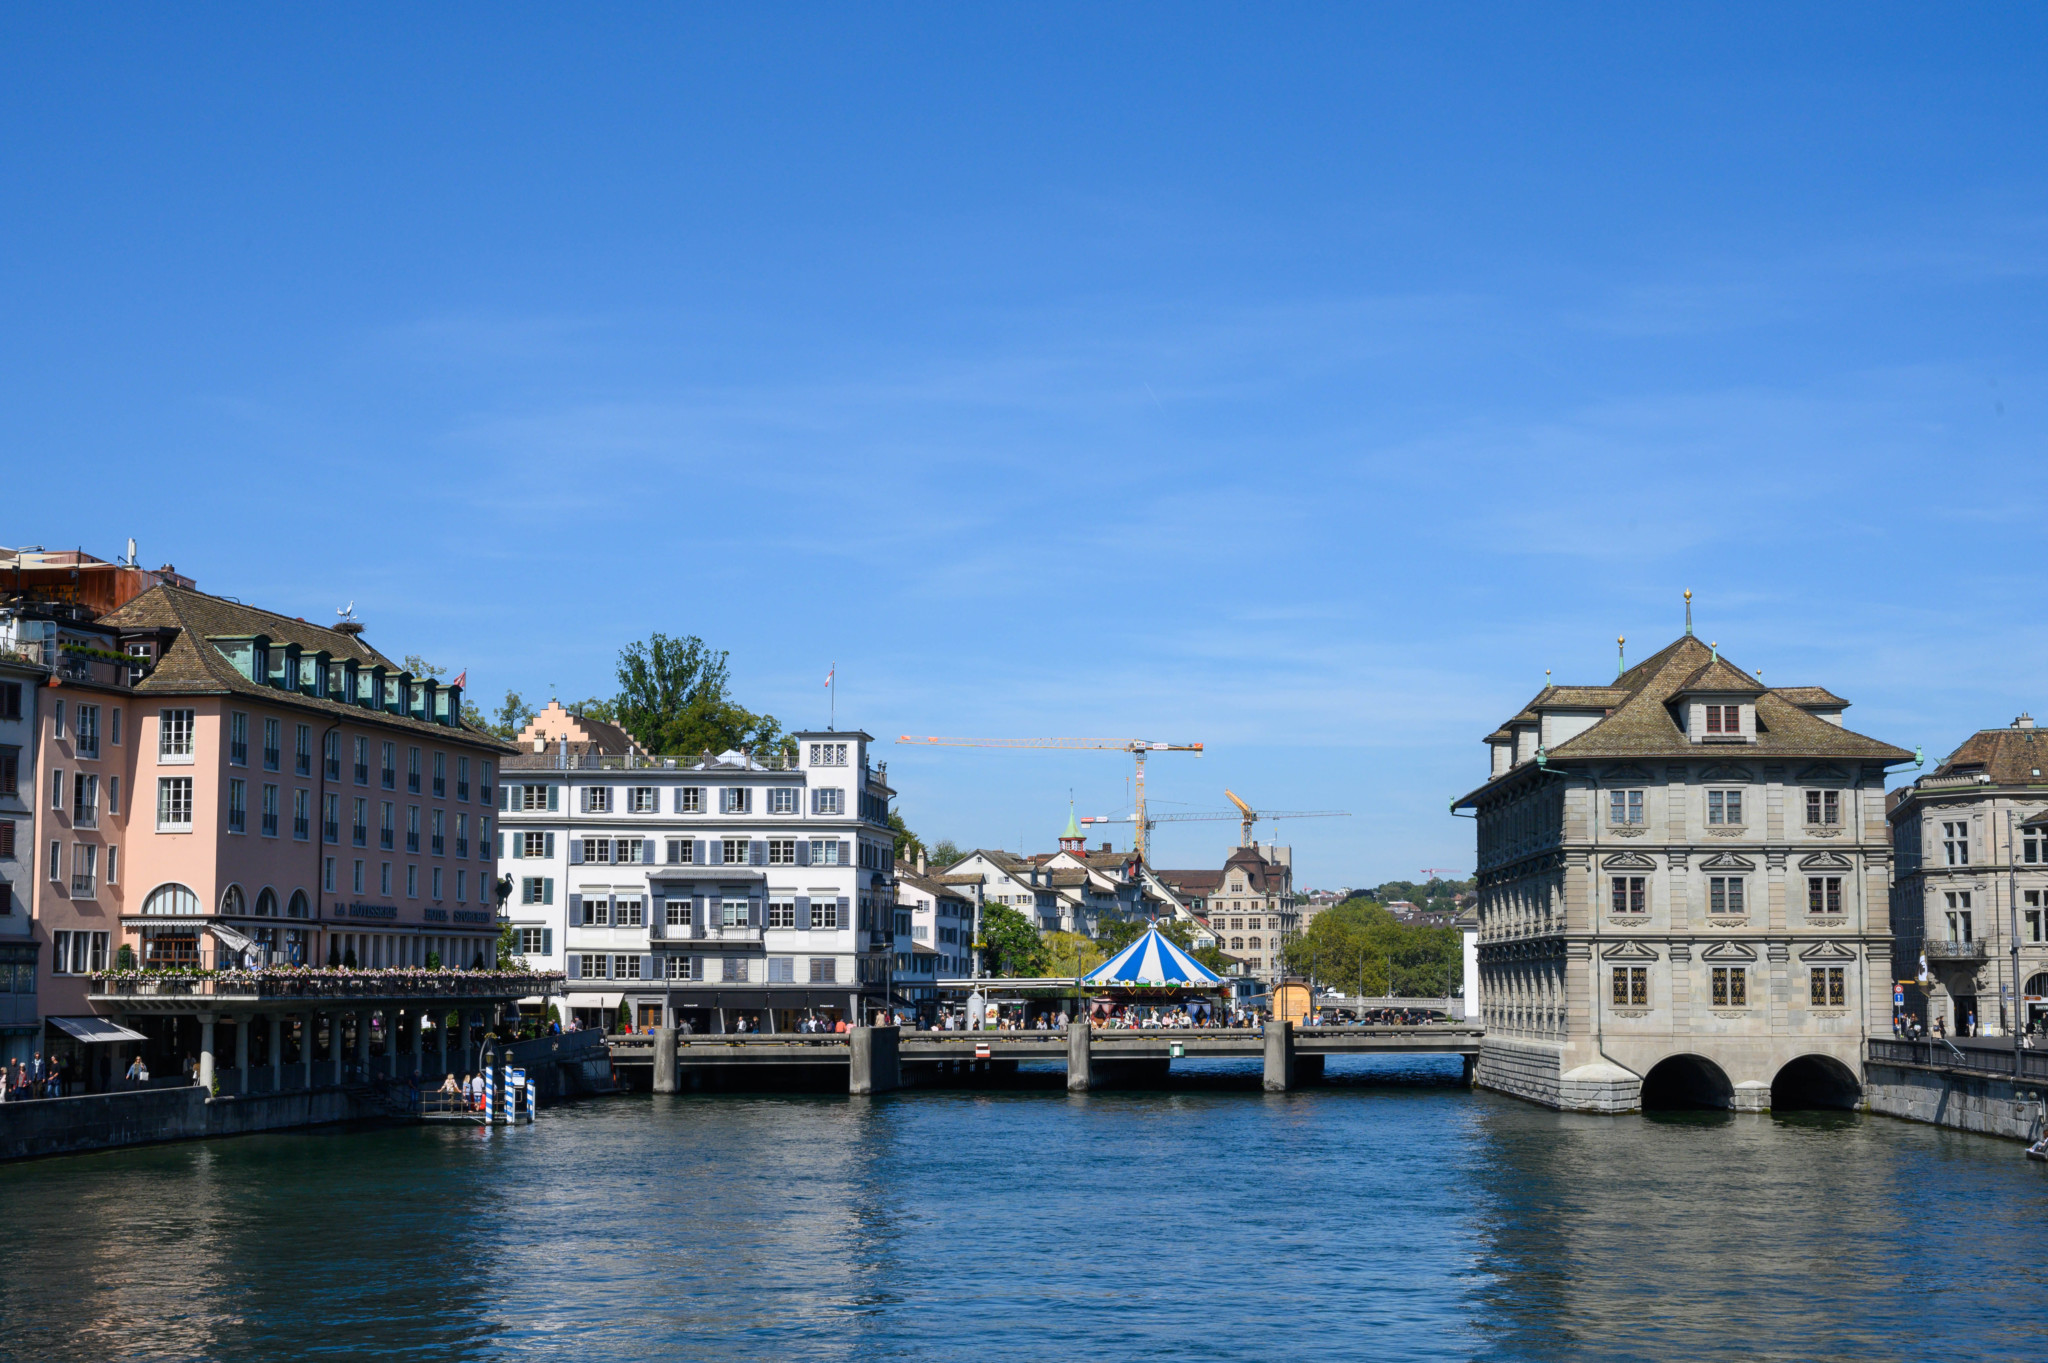 Das Rathaus von Zürich darf nicht fehlen